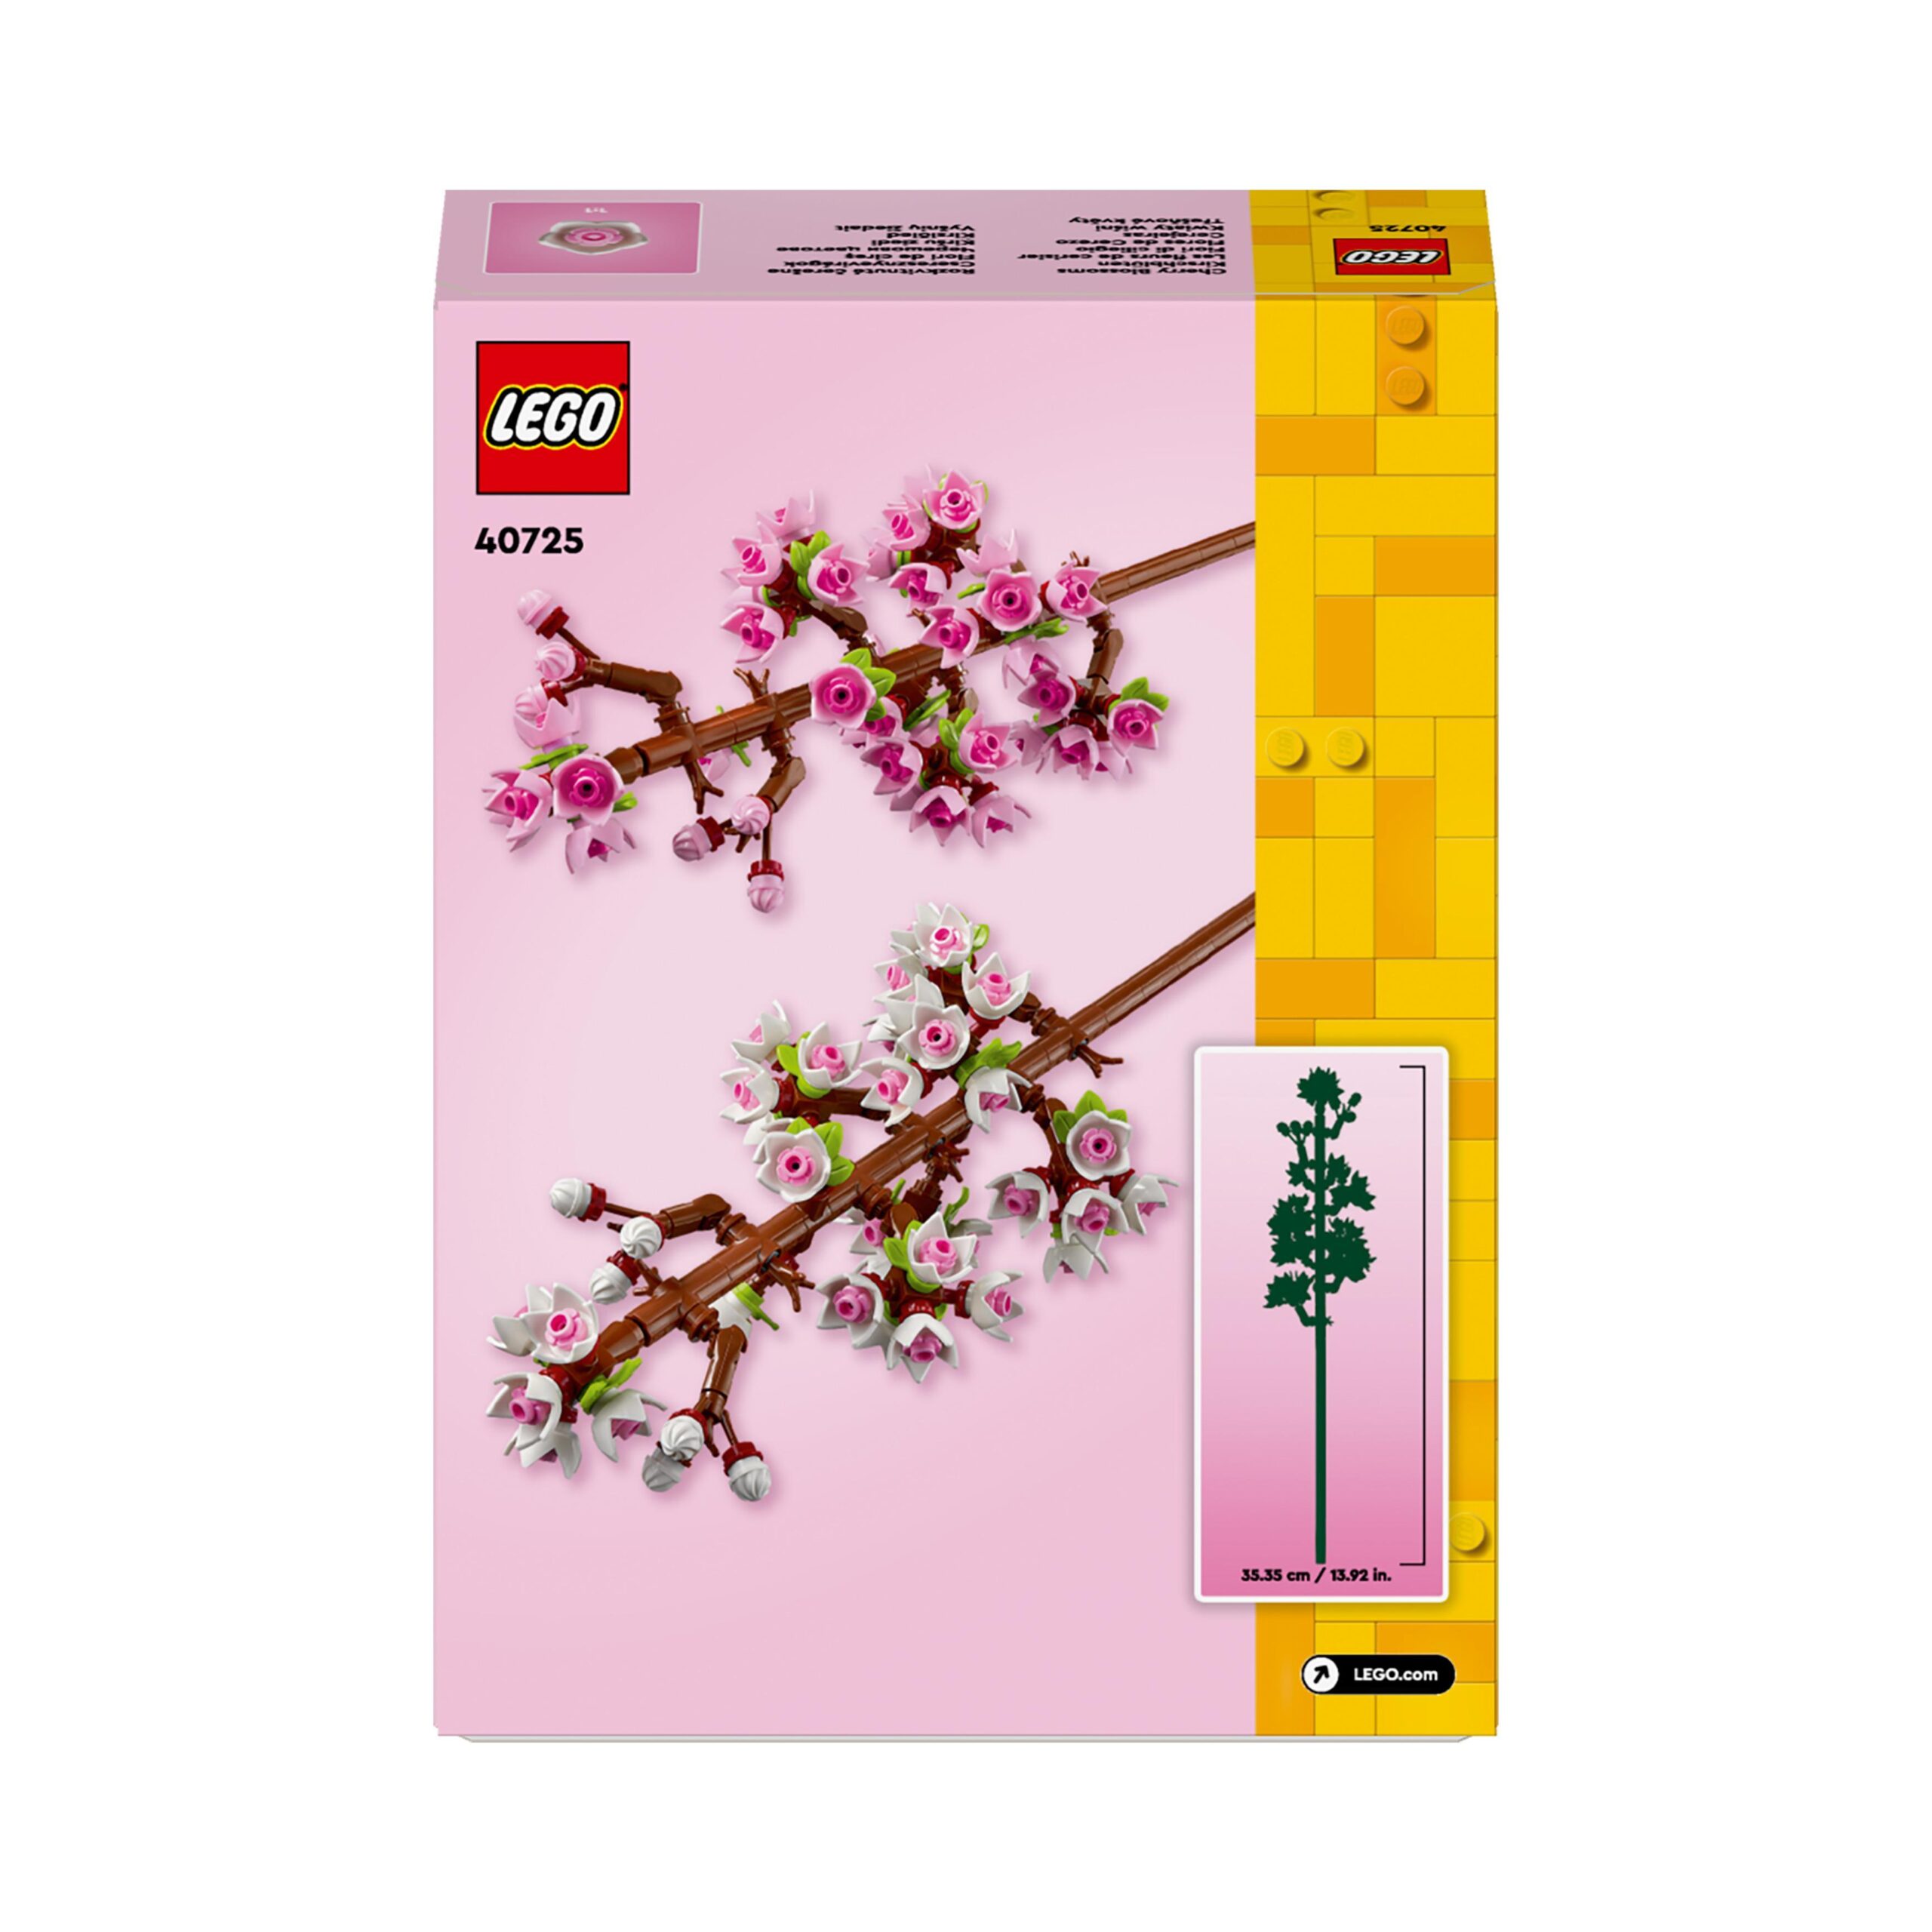 Lego creator 40725 fiori di ciliegio, set per adulti e bambini 8+ anni, regalo per san valentino, per donna, uomo, lei o lui - LEGO CREATOR